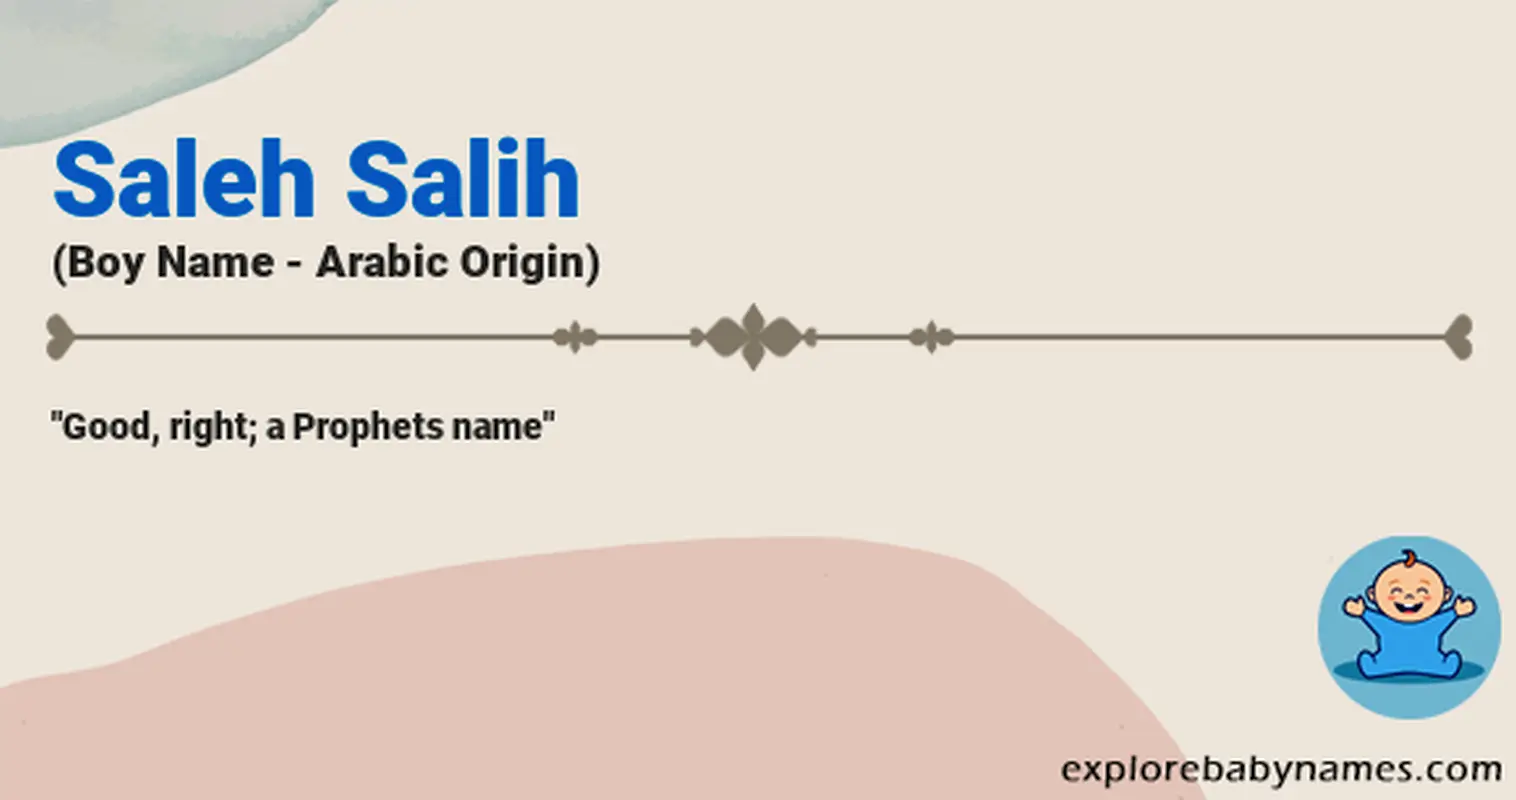 Meaning of Saleh Salih